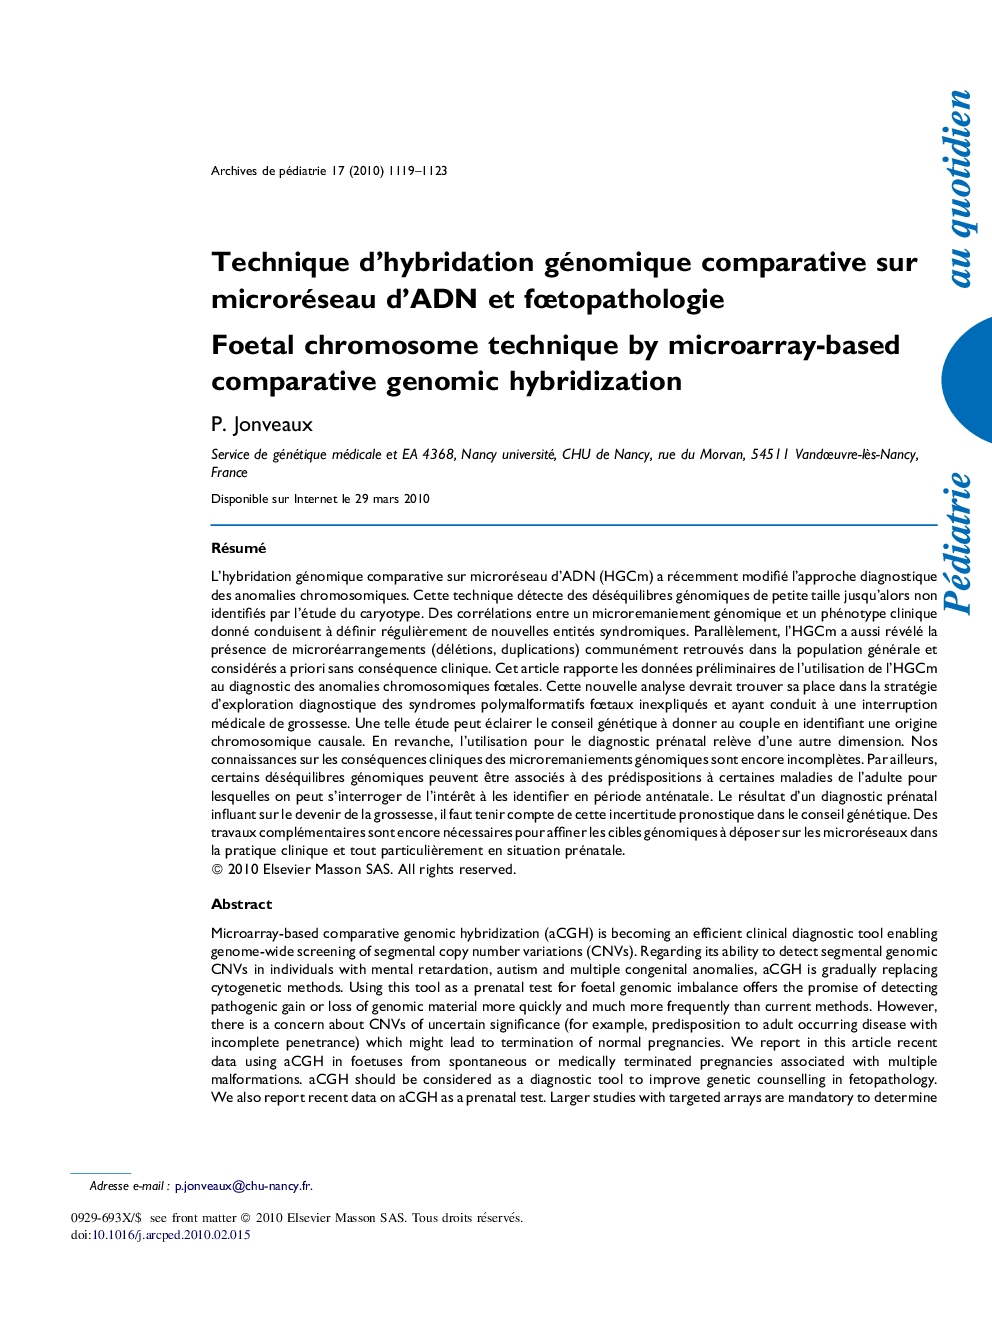 Technique d'hybridation génomique comparative sur microréseau d'ADN et fÅtopathologie